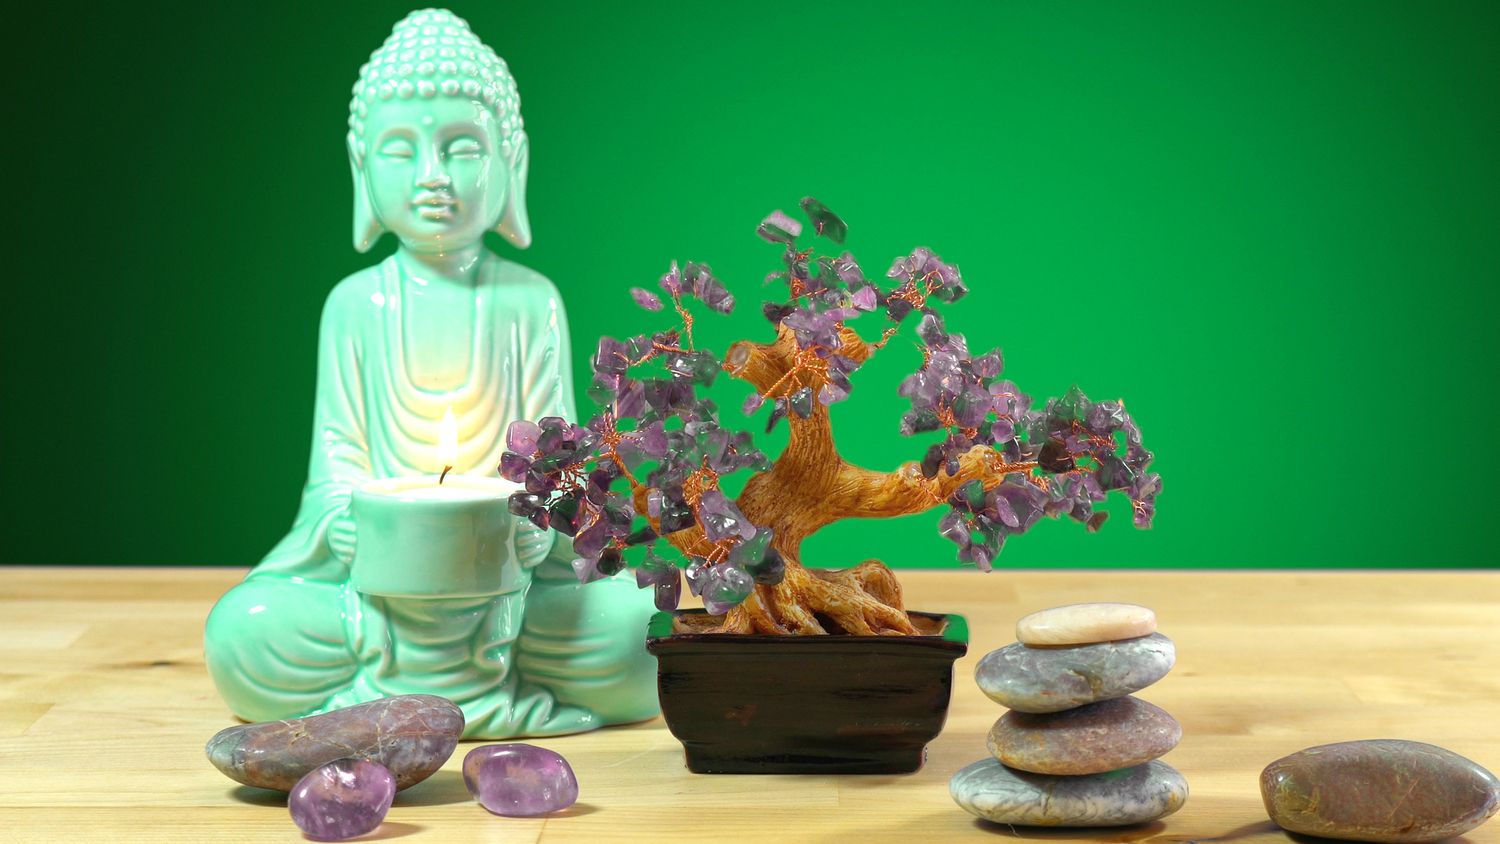 Beruhigende Zen-Inneneinrichtung, Tisch mit Buddha-Statue und brennender Kerze